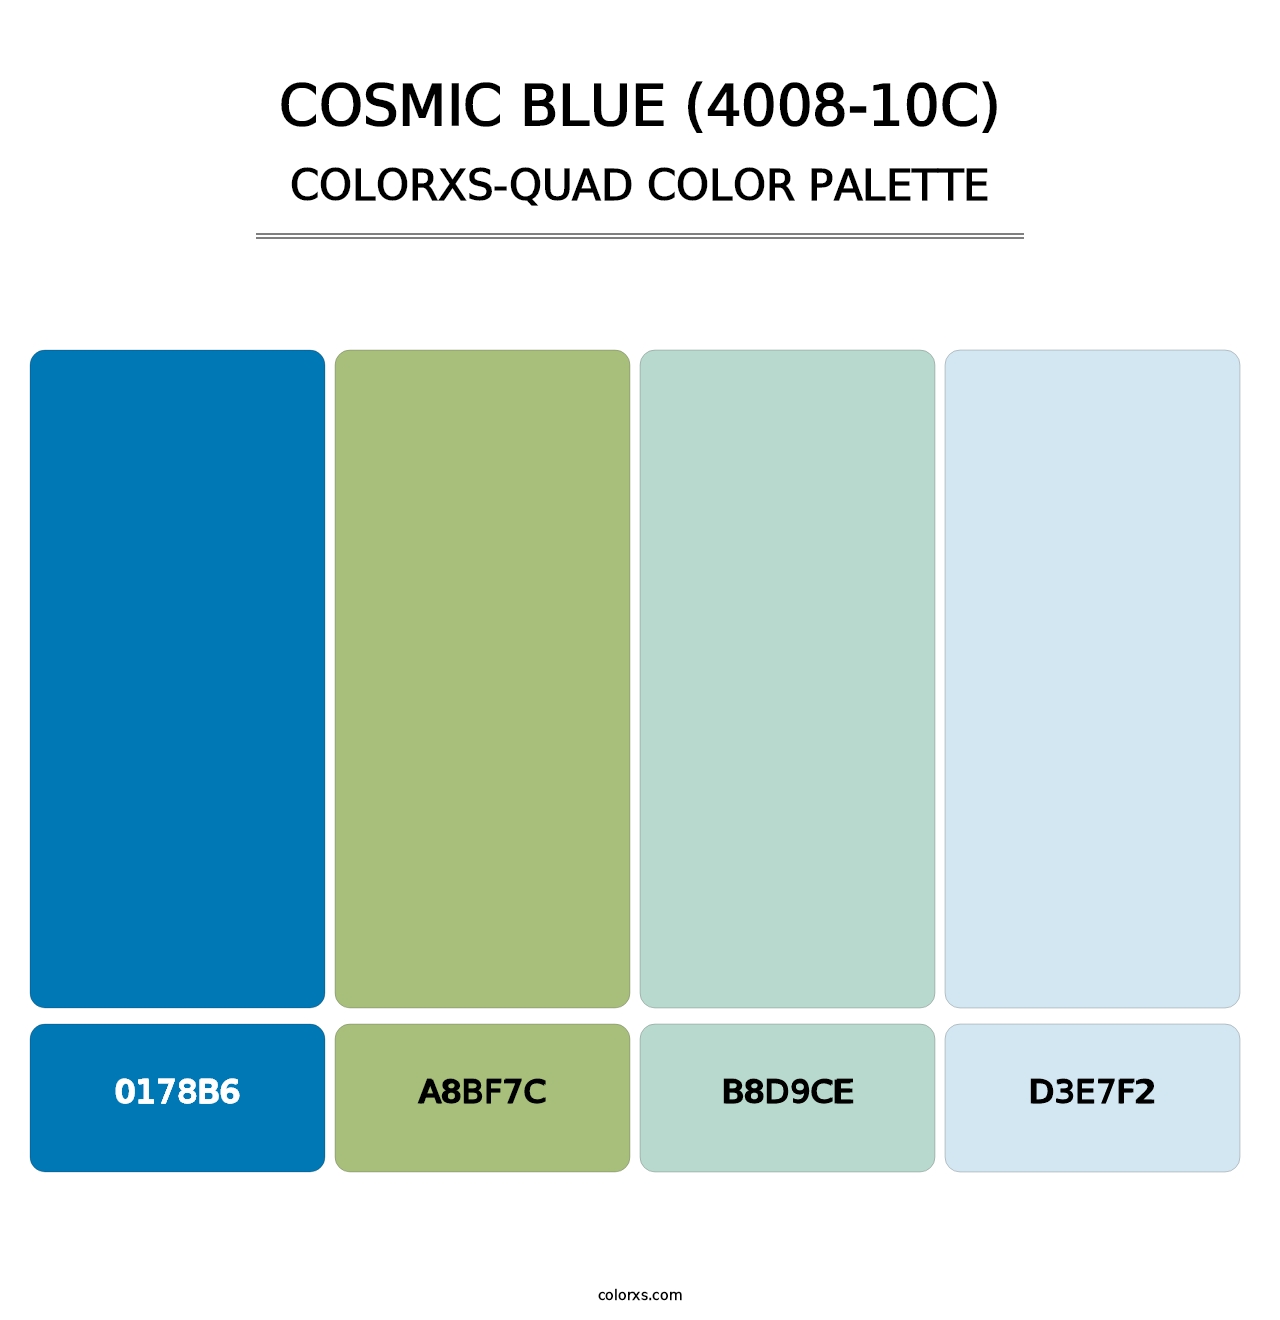 Cosmic Blue (4008-10C) - Colorxs Quad Palette